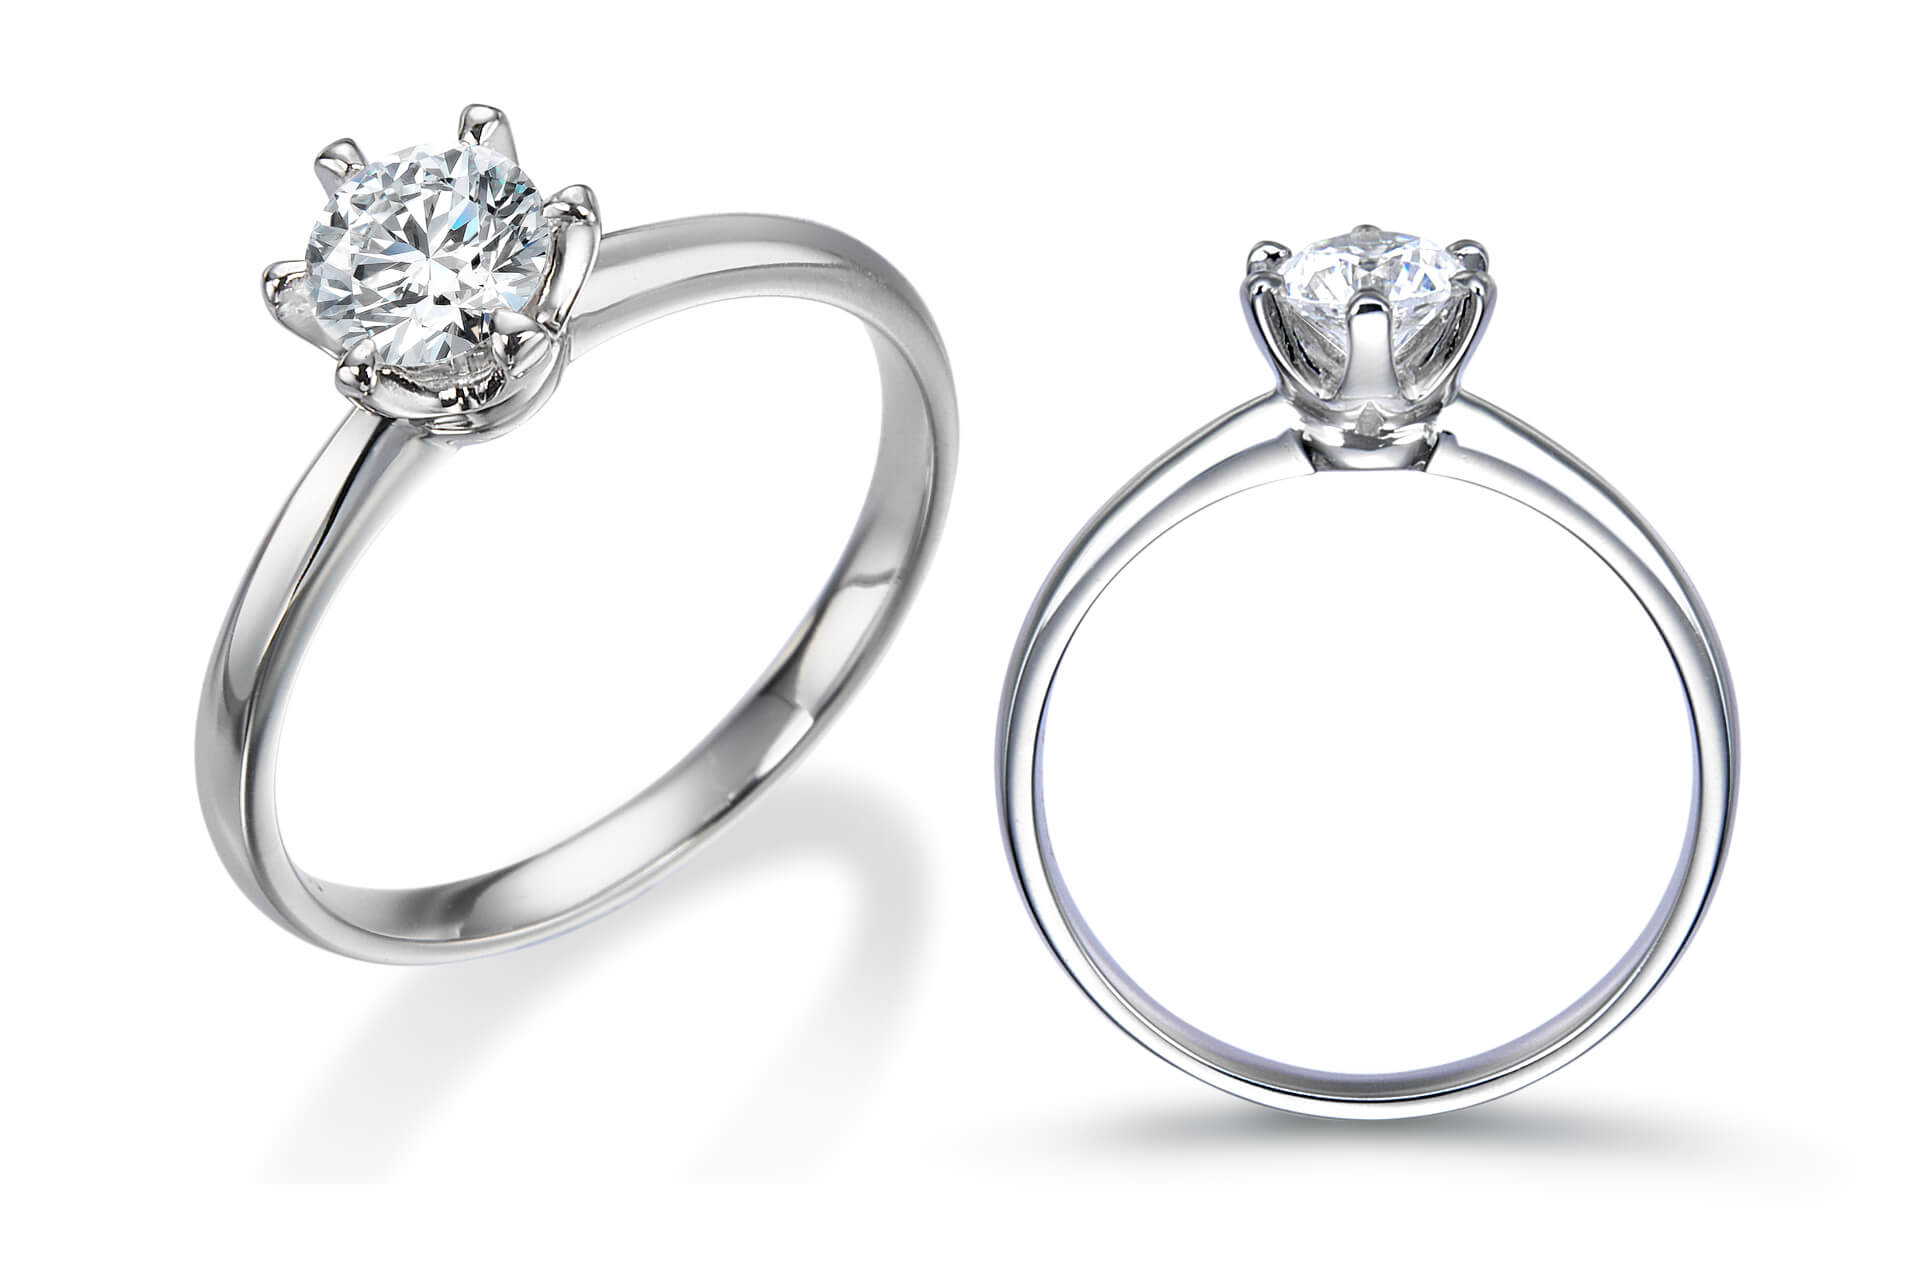 婚約指輪で立て爪以外に人気のデザインとは 熊本で指輪を検討している方に教えます 熊本 鶴屋百貨店のスペシャルコラム